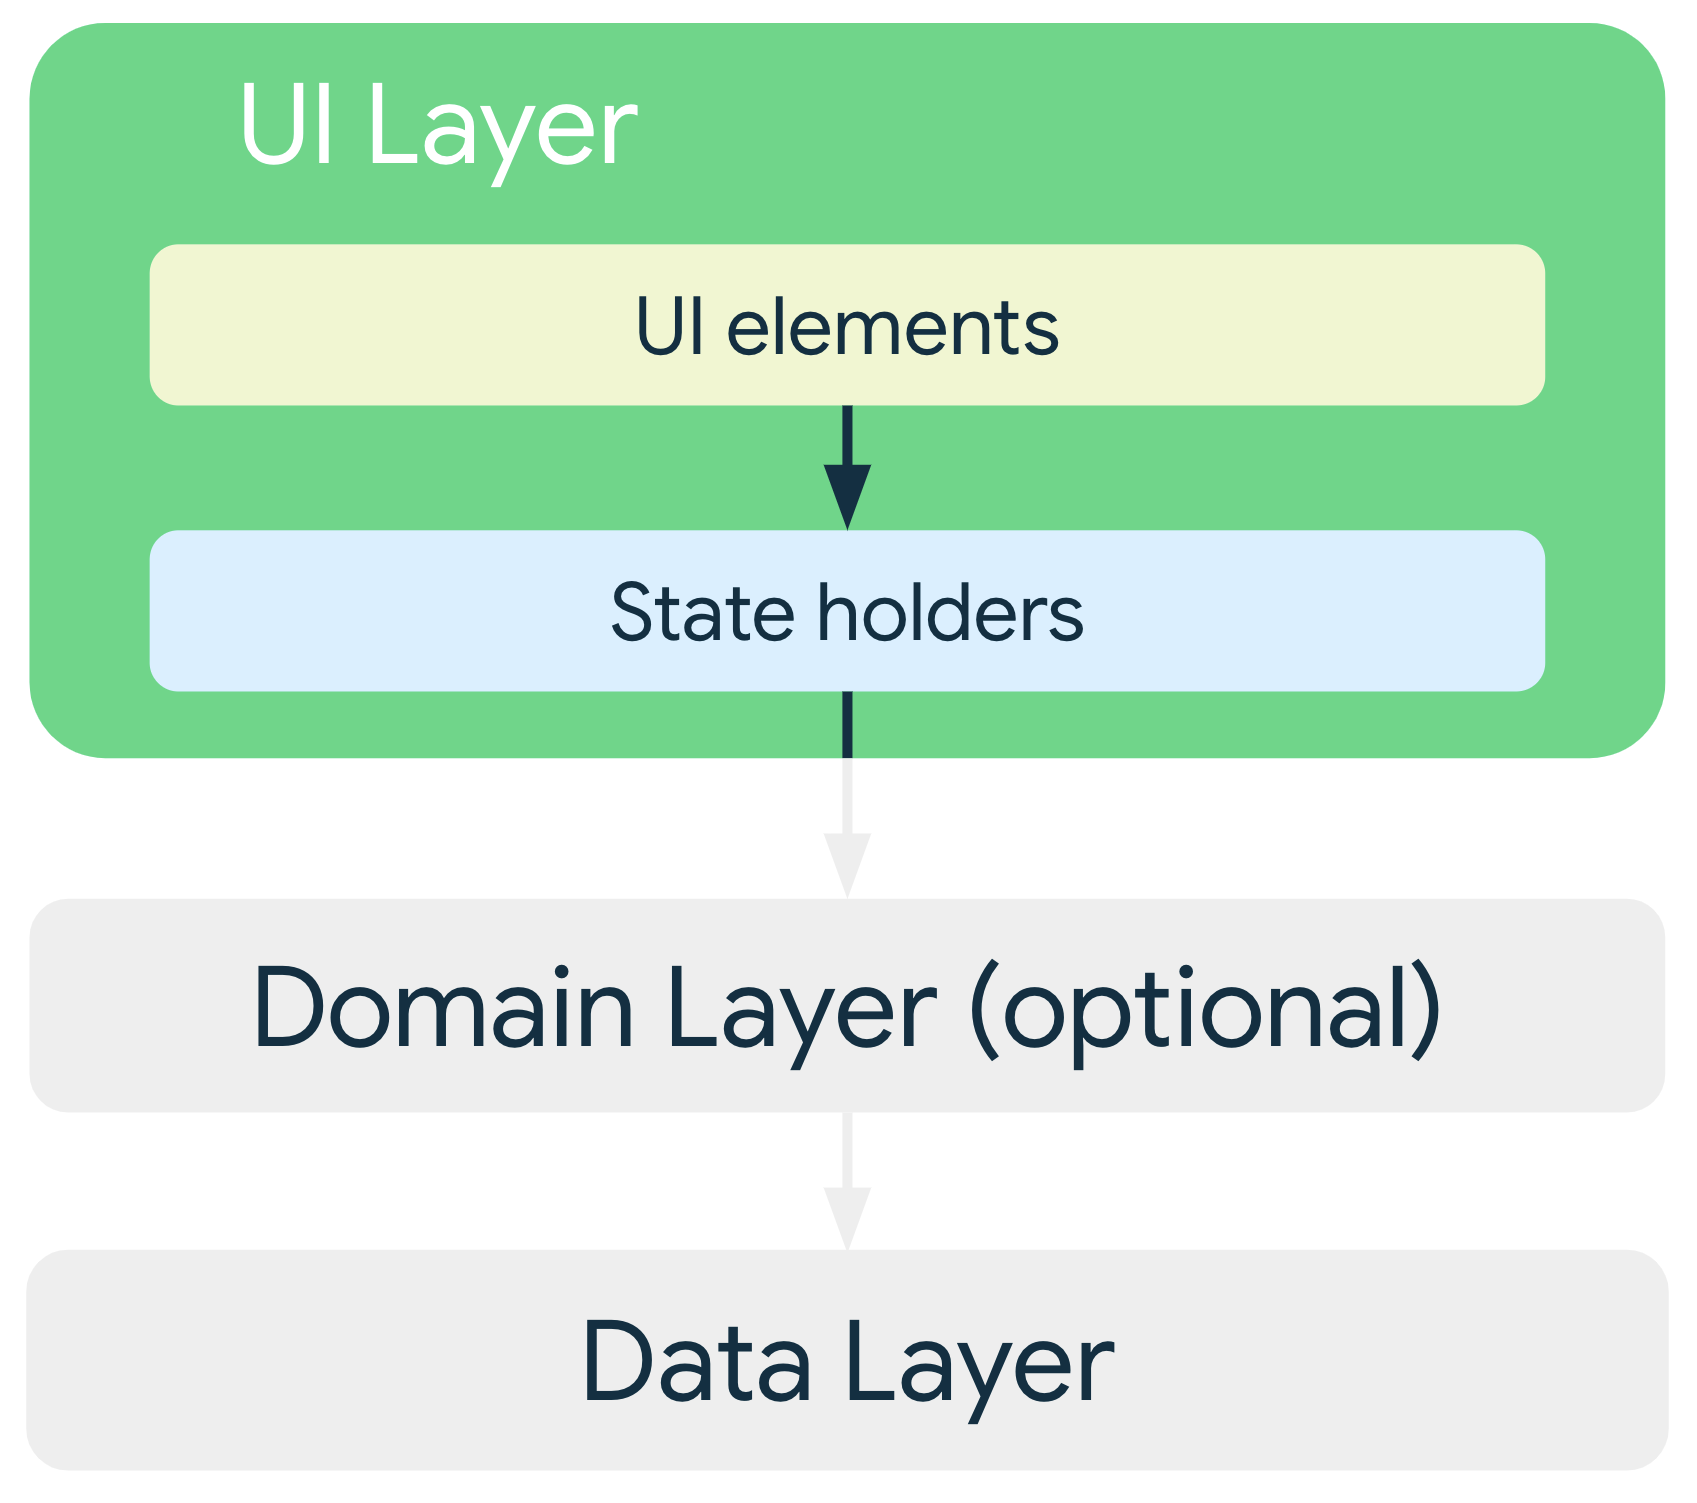 In una tipica architettura, gli elementi UI del livello UI dipendono dai titolari di stato, che a loro volta dipendono dalle classi del livello dati o del livello di dominio facoltativo.